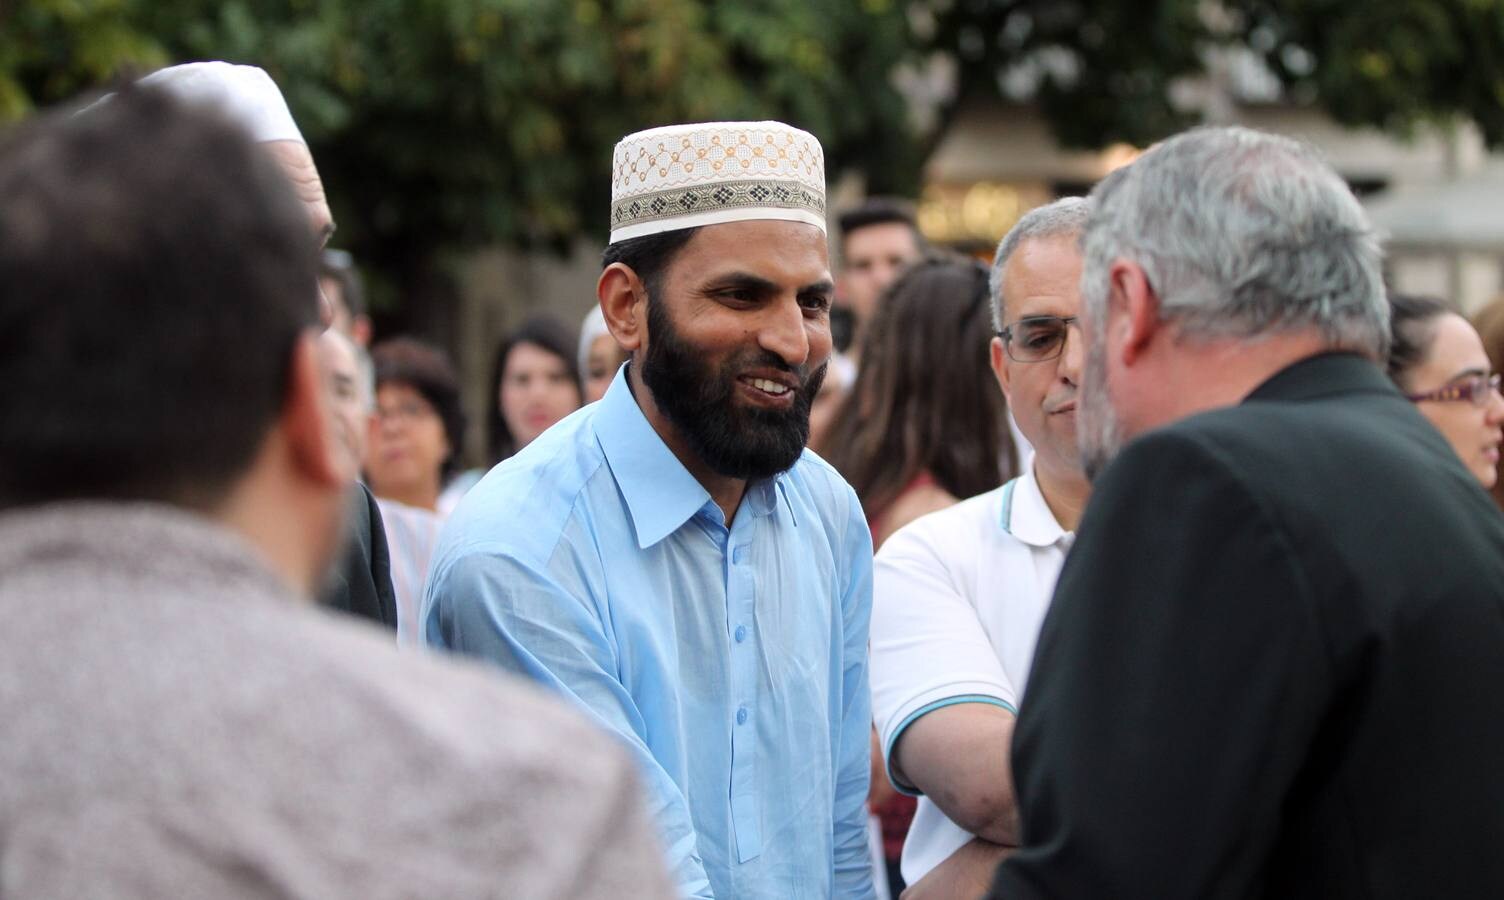 La comunidad musulmana de La Rioja ha reunido hoy a las principales confesiones religiosas de la comunidad para expresar su rechazo a cualquier tipo de terrorismo, en un acto que ha reunido a un millar de personas en la Plaza del Mercado de Logroño.